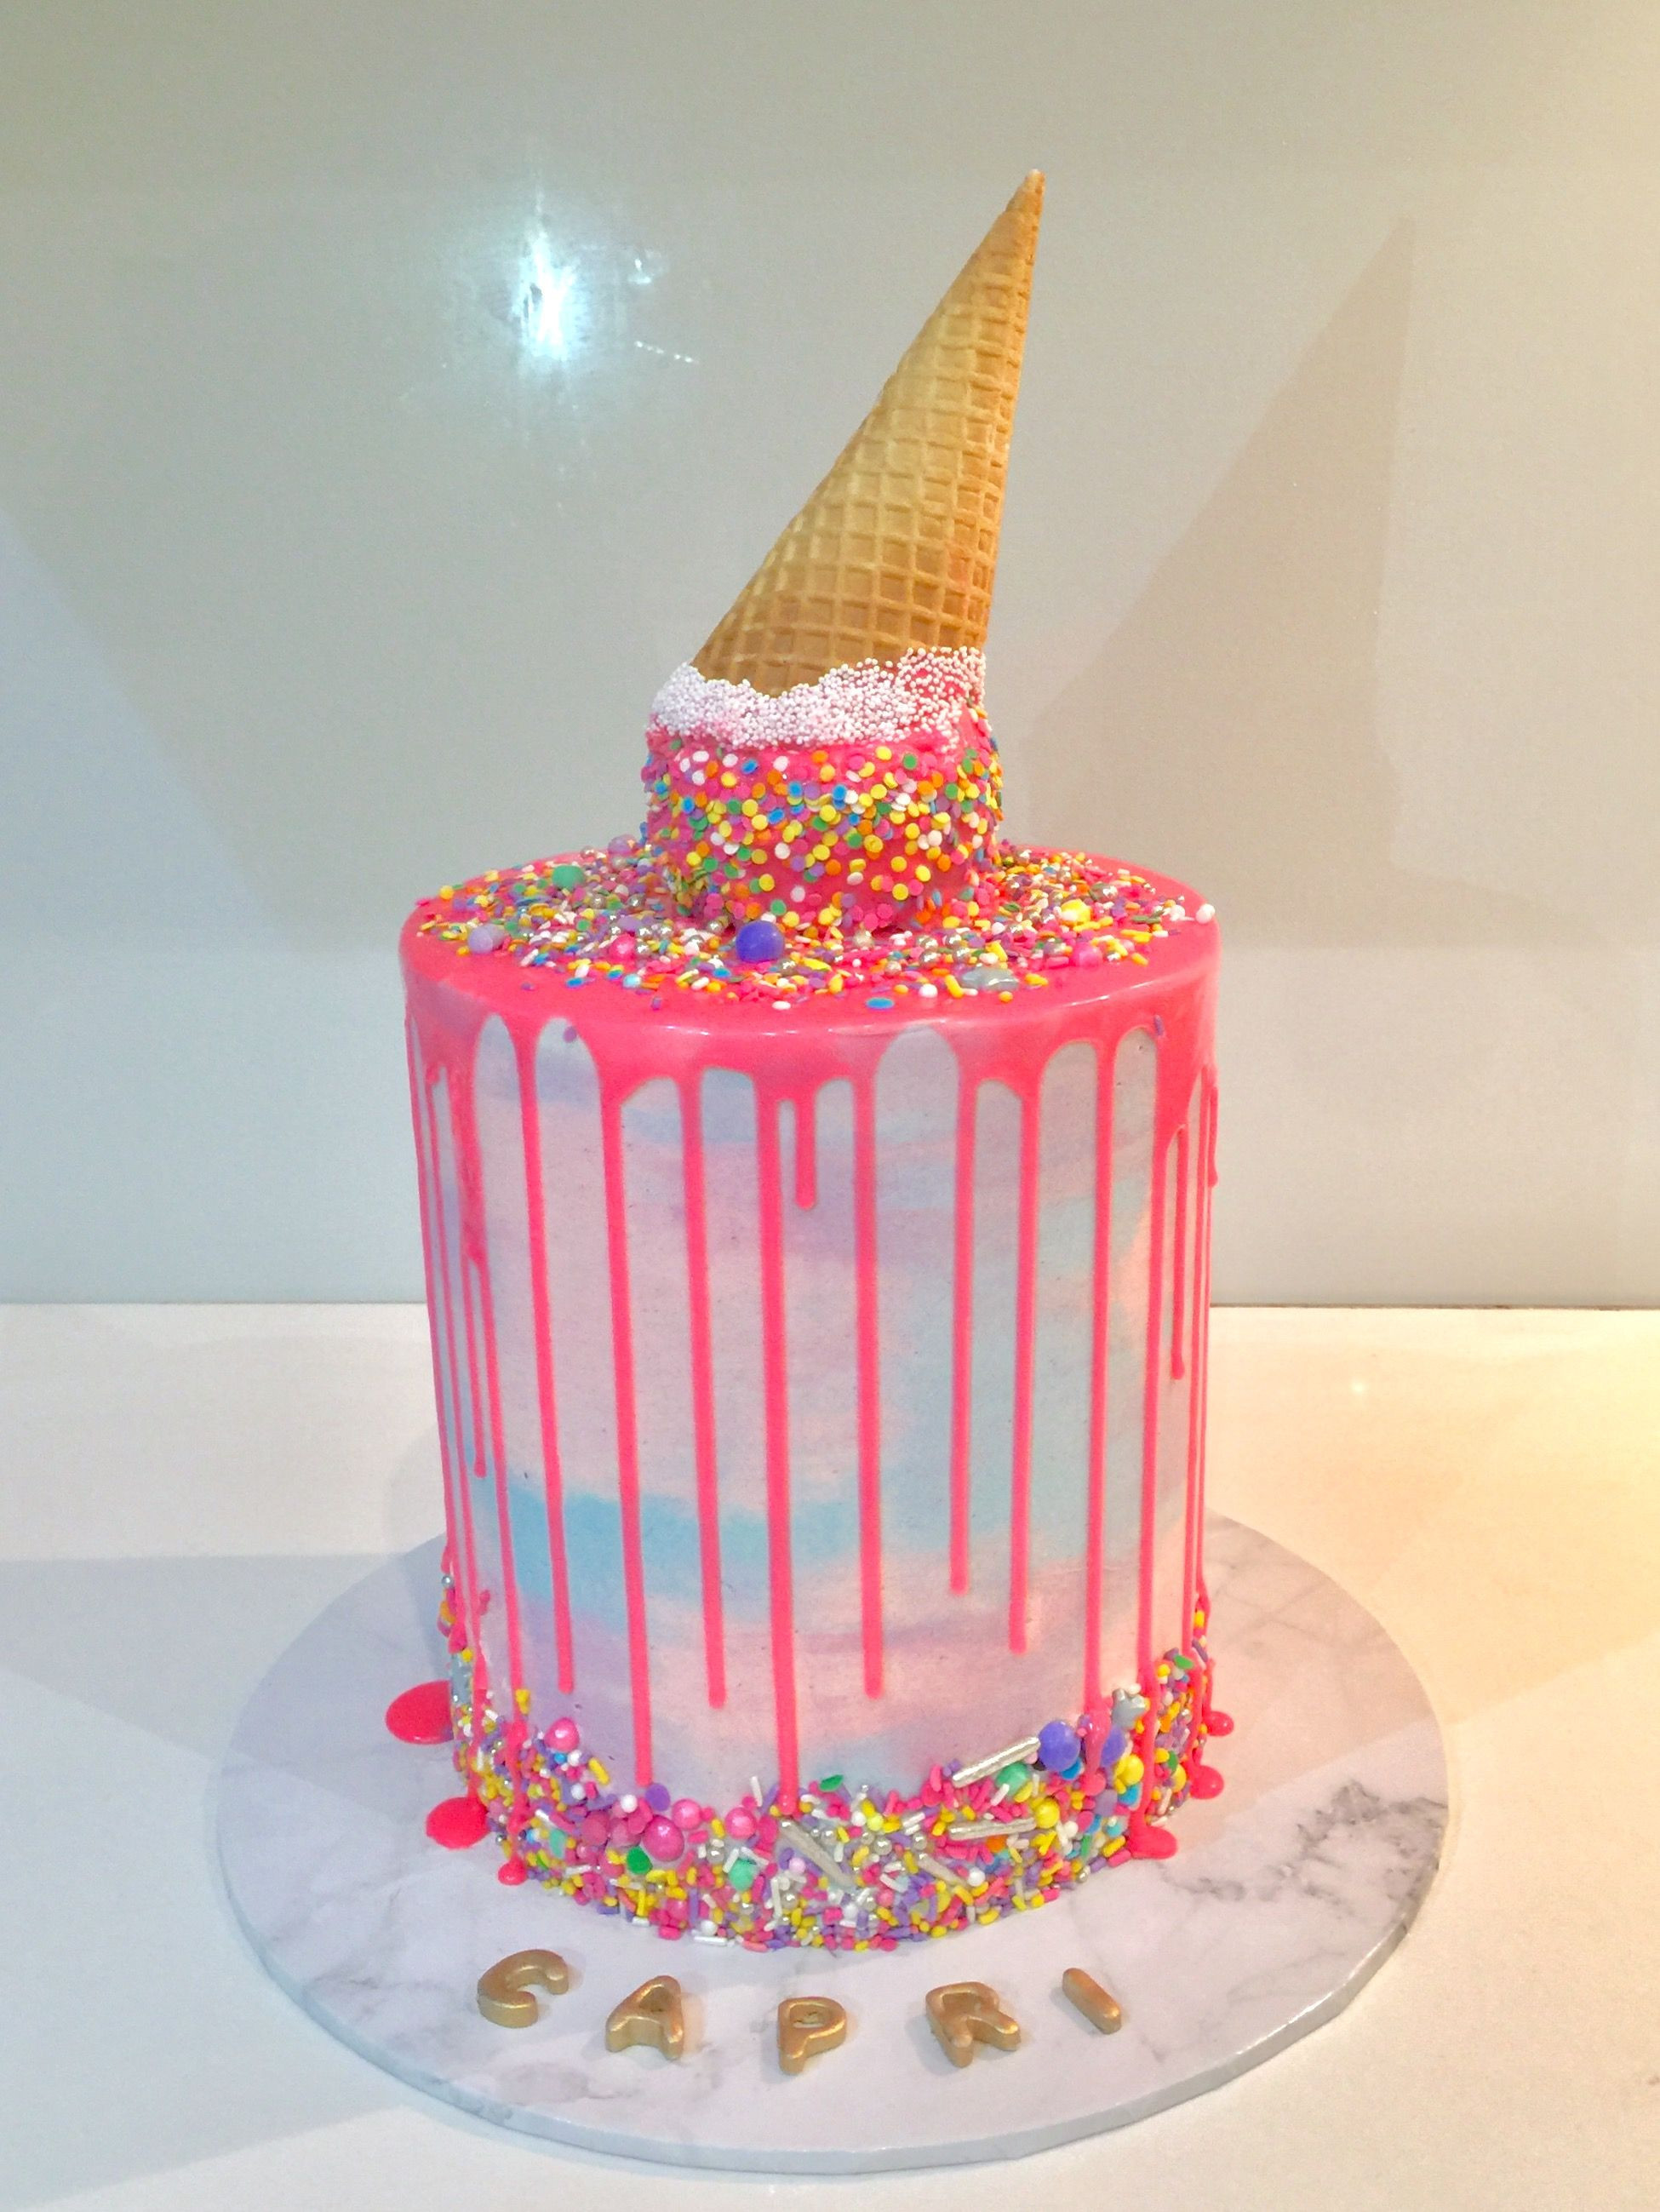 Best ideas about Birthday Cake Gum
. Save or Pin Bubblegum ice cream drip cake ella in 2019 Now.